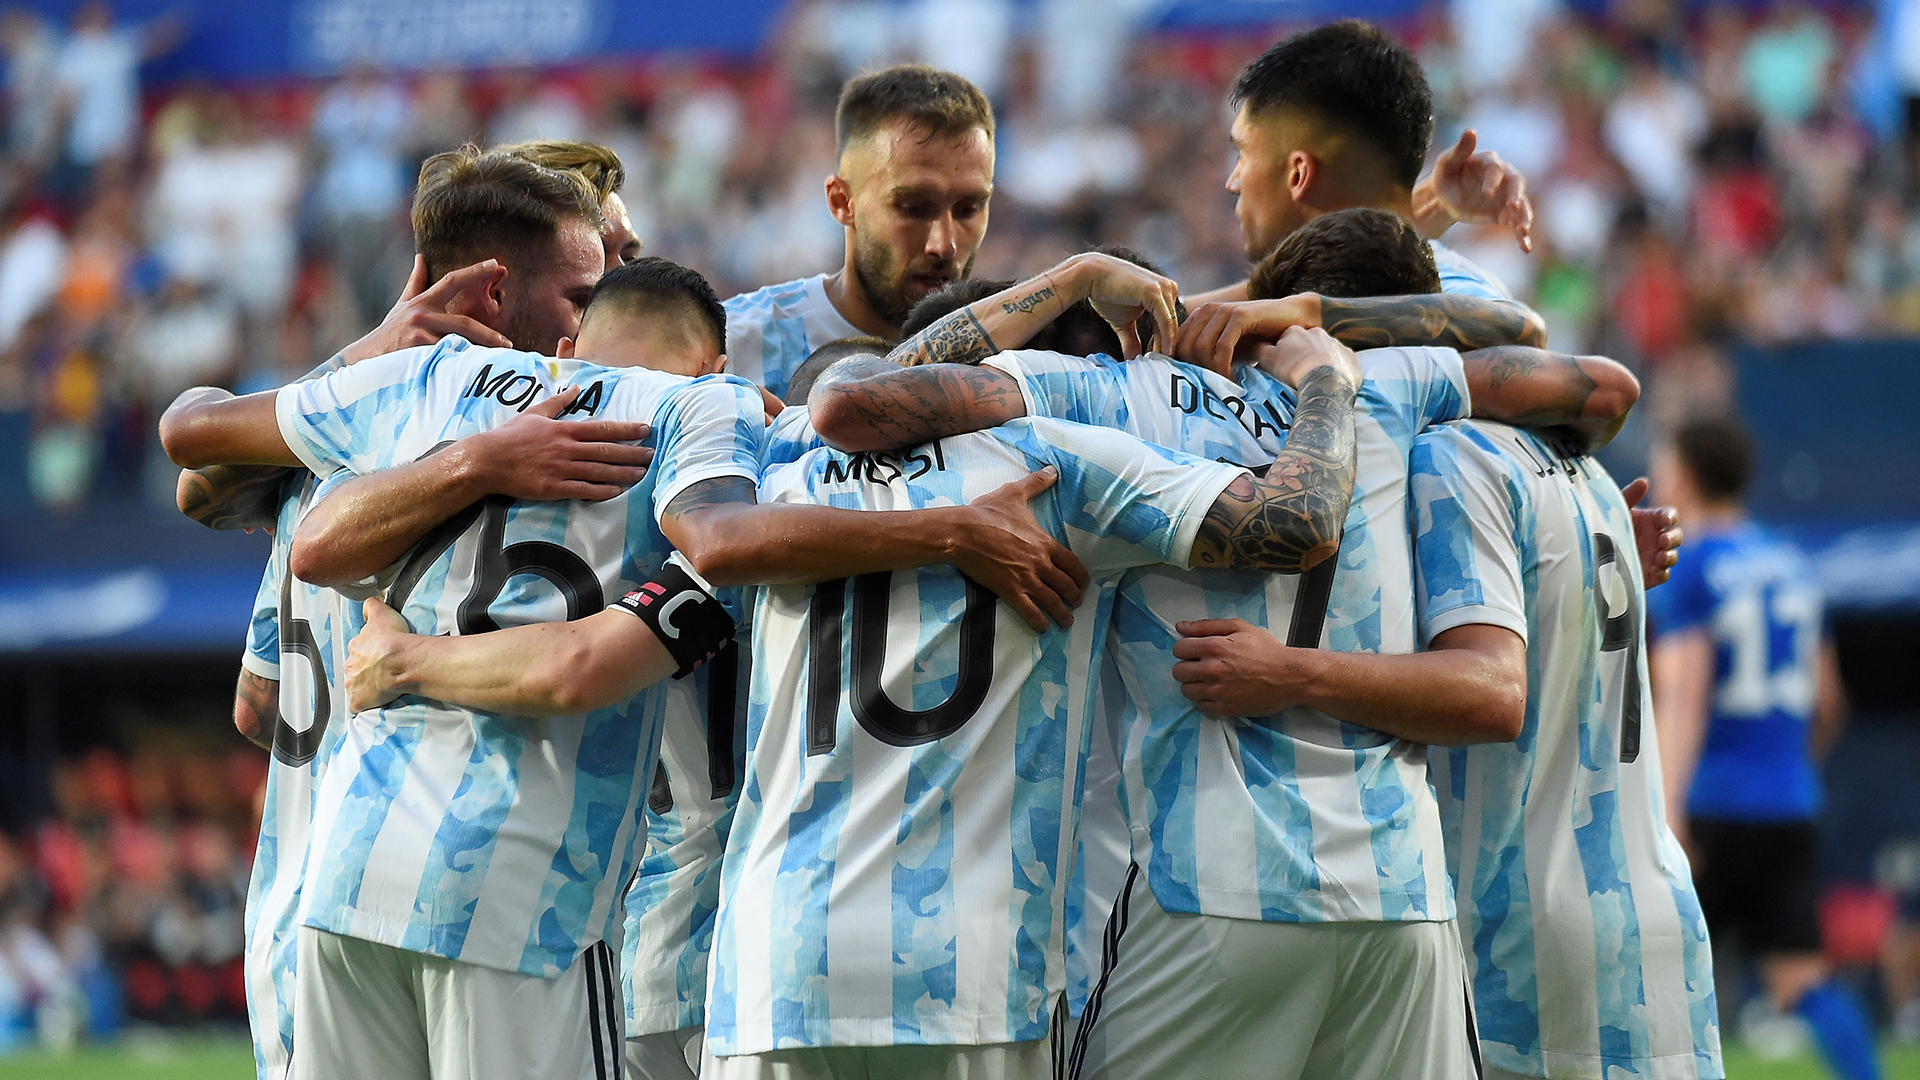 La última presentación de la Argentina fue goleada 5-0 a Estonia en junio (AFP)